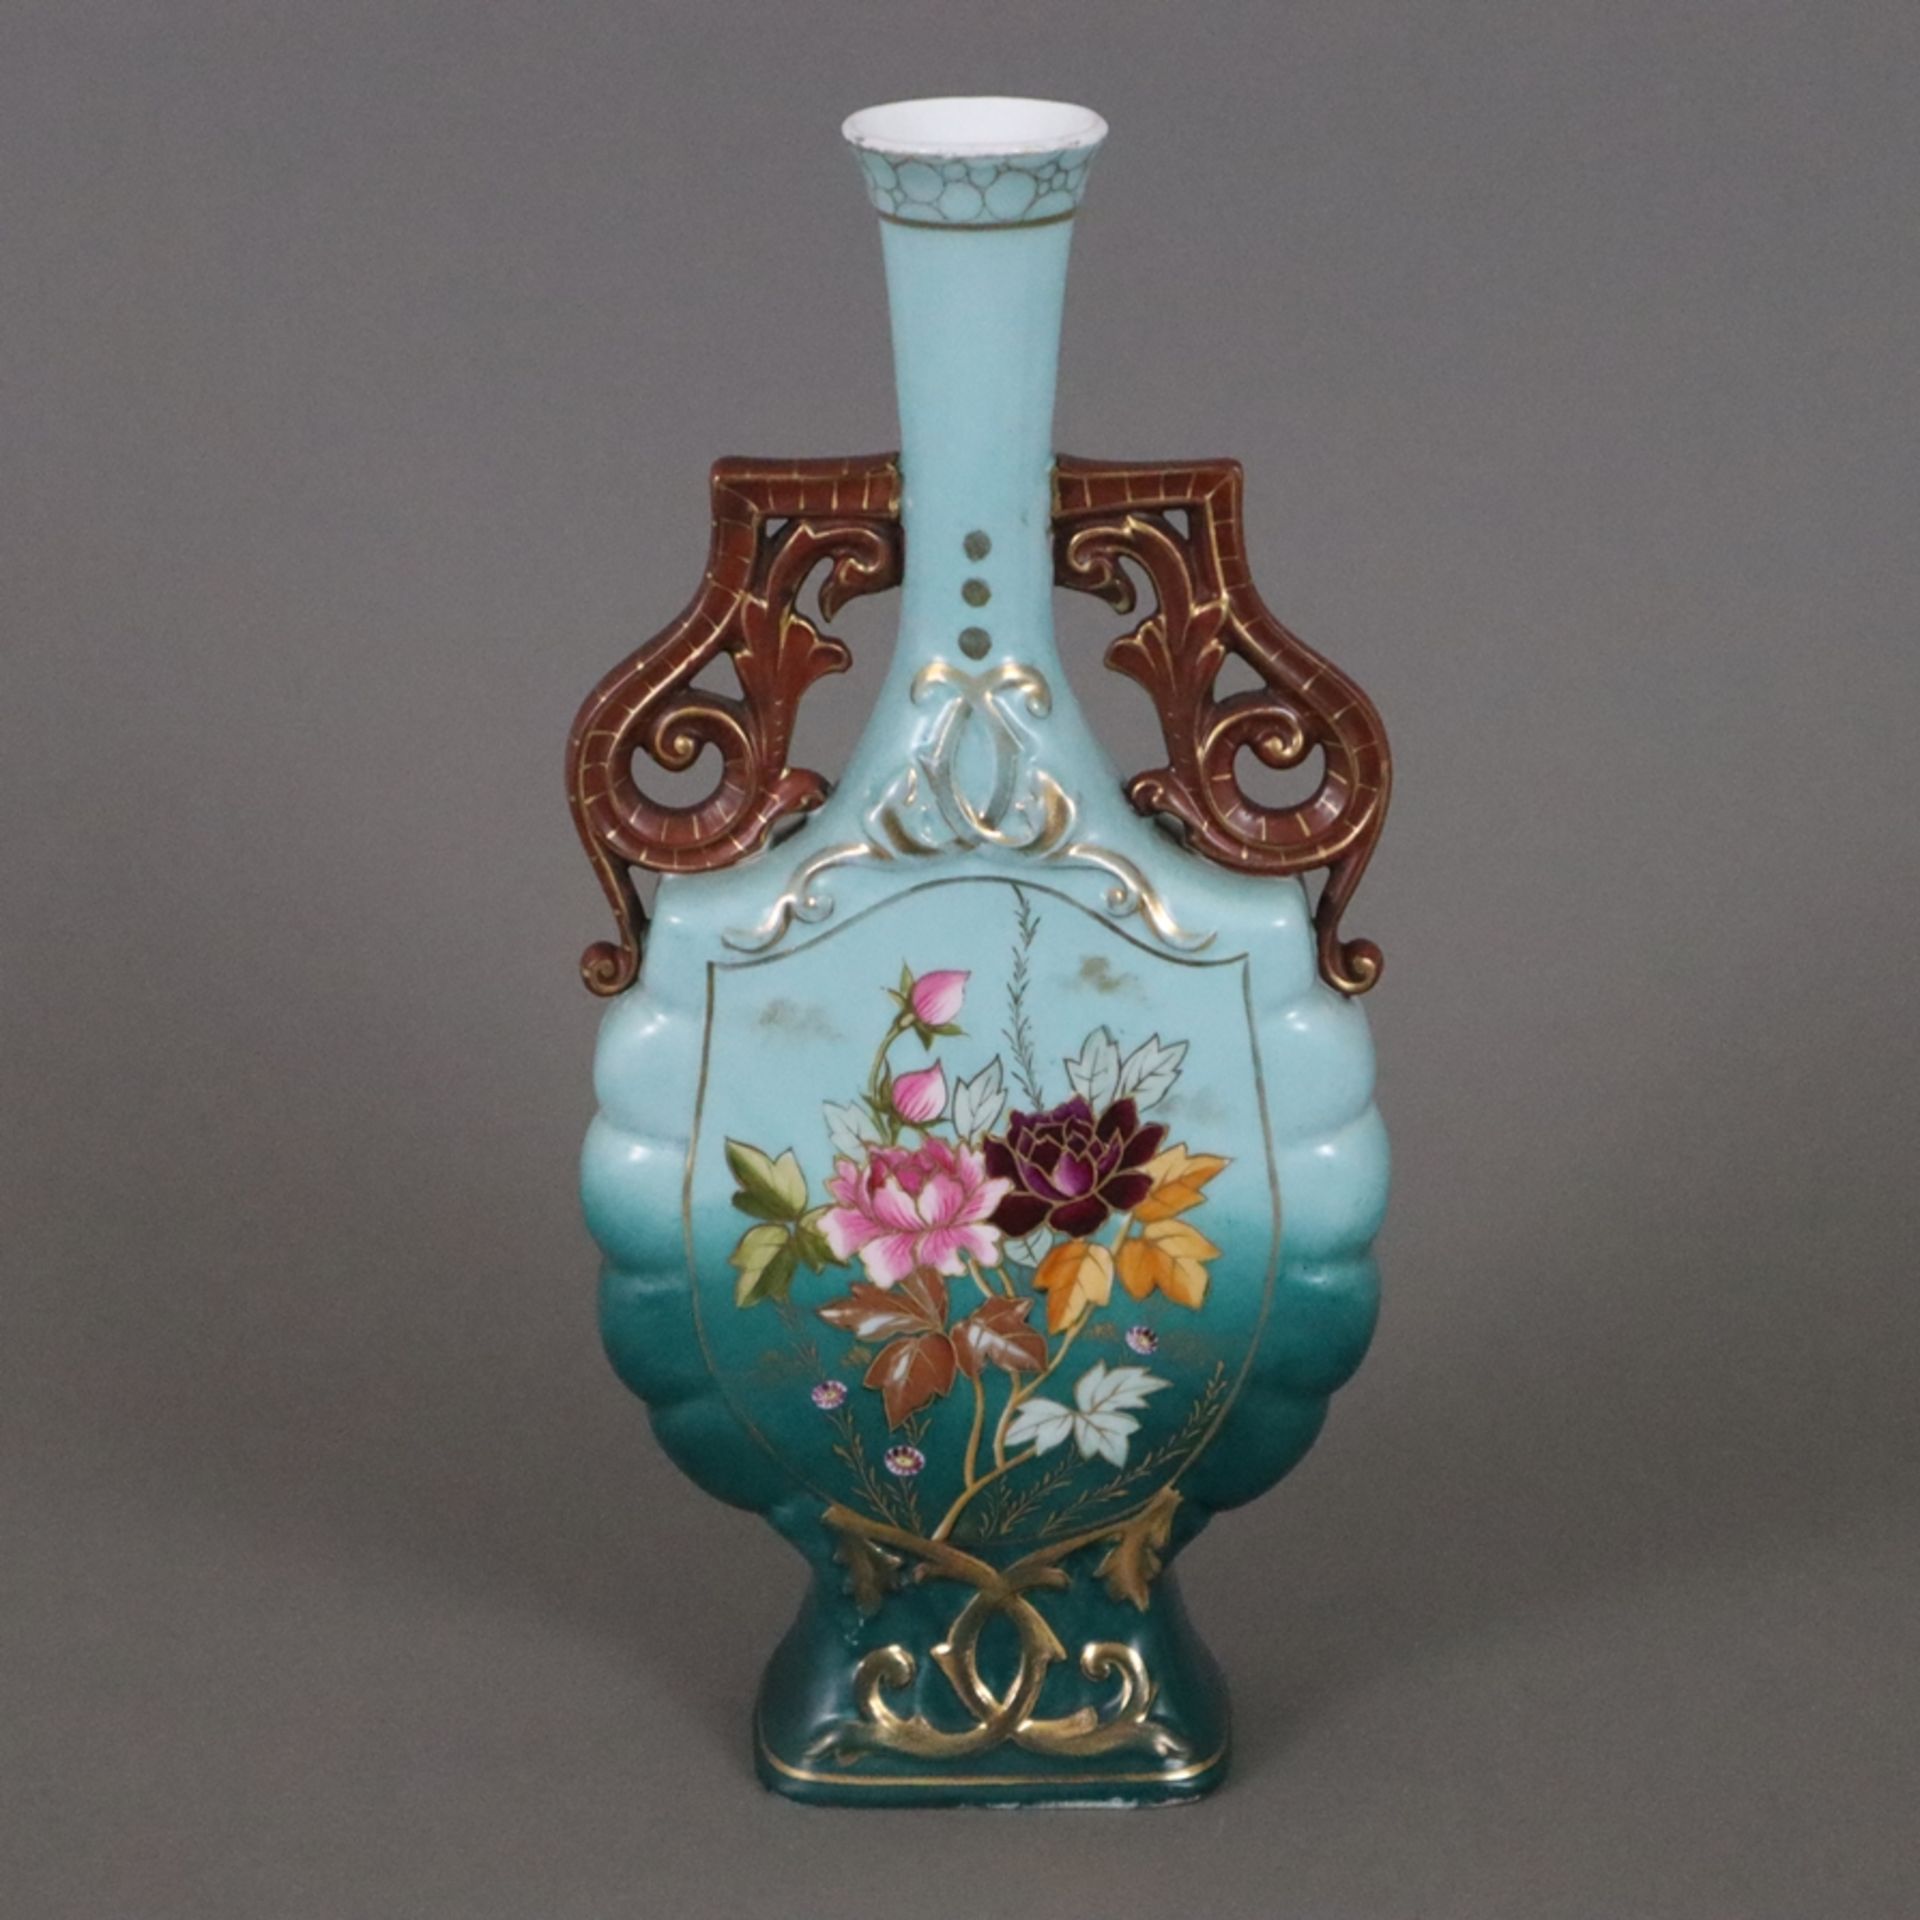 Historismus-Vase - um 1900, Porzellan, polychrom und gold bemalt mit floralem Dekor, gedrückte Flas